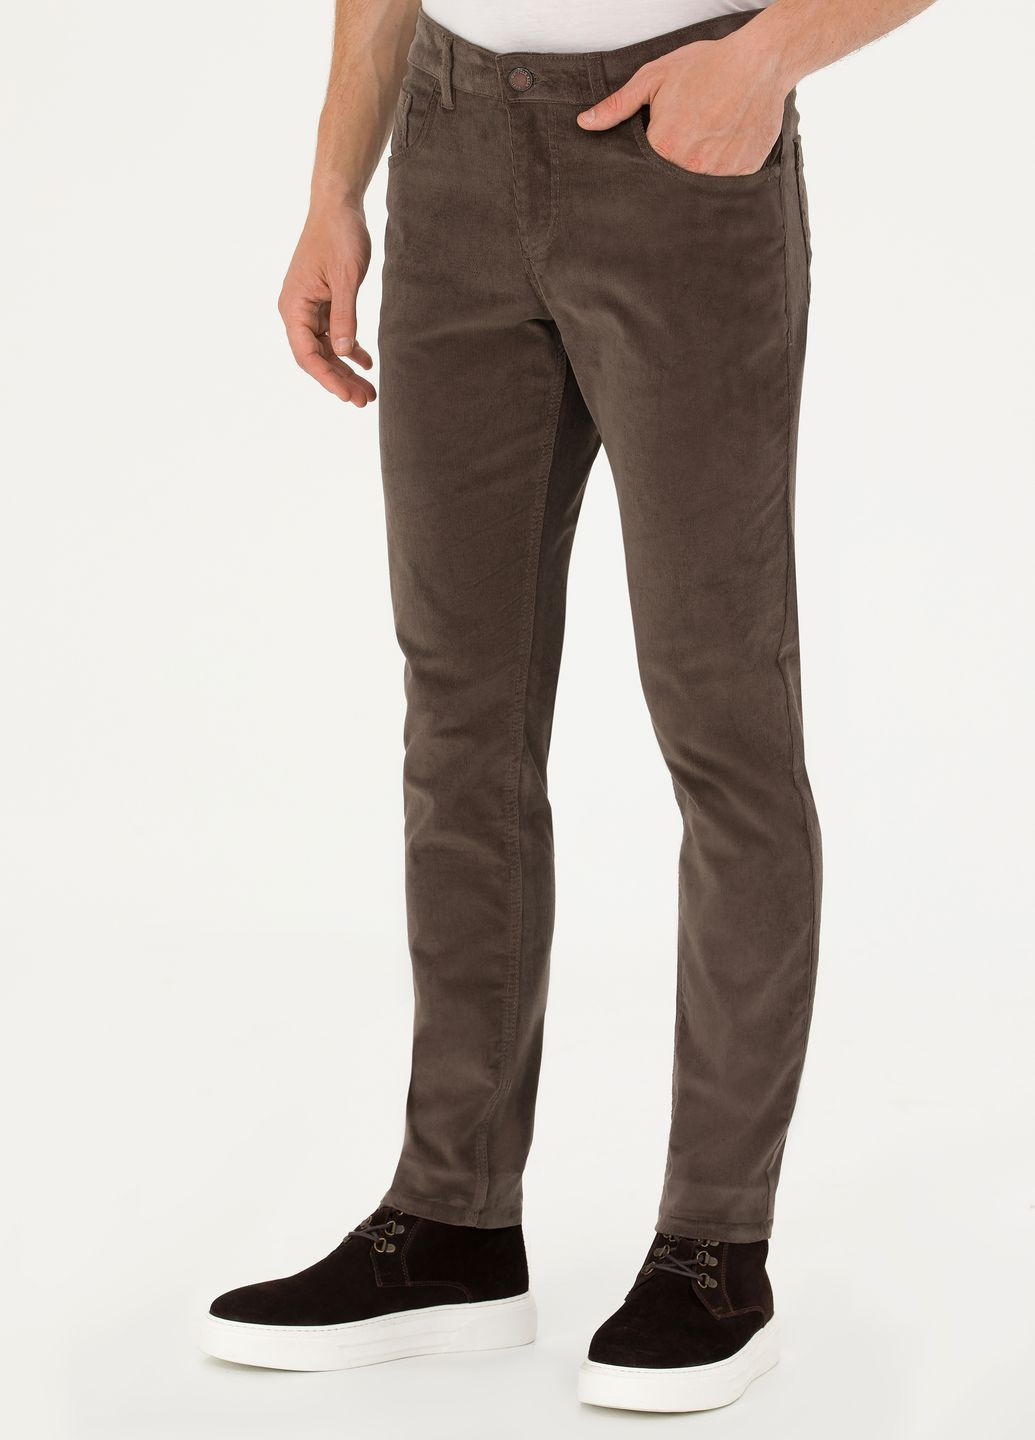 Светло-коричневые брюки U.S. Polo Assn.